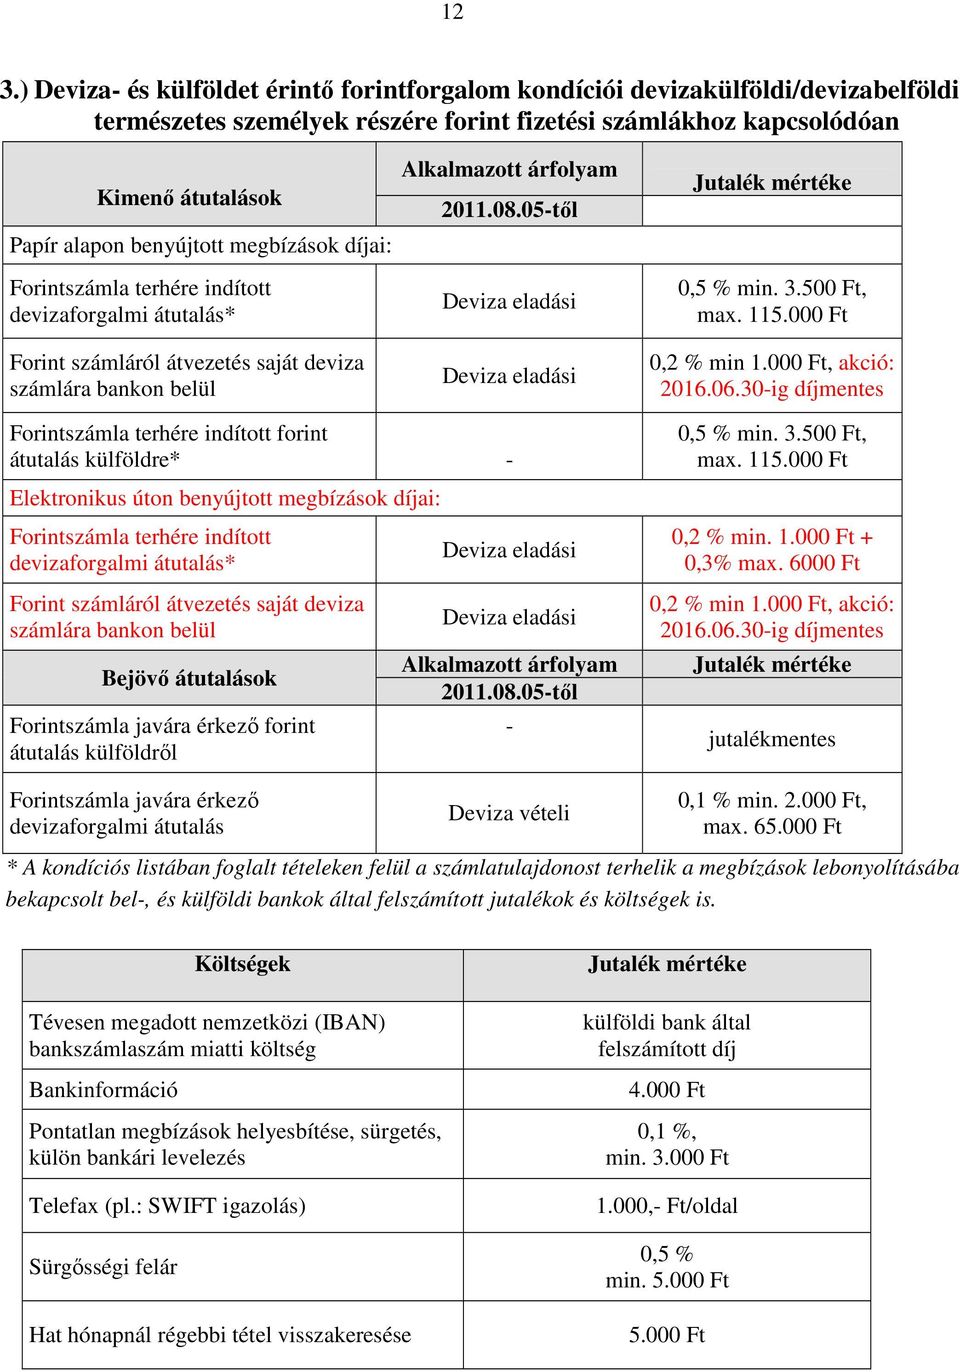 05-től Deviza eladási Deviza eladási Jutalék mértéke 3.50, max. 115.00 0,2 % min 1.00, akció: 2016.06.